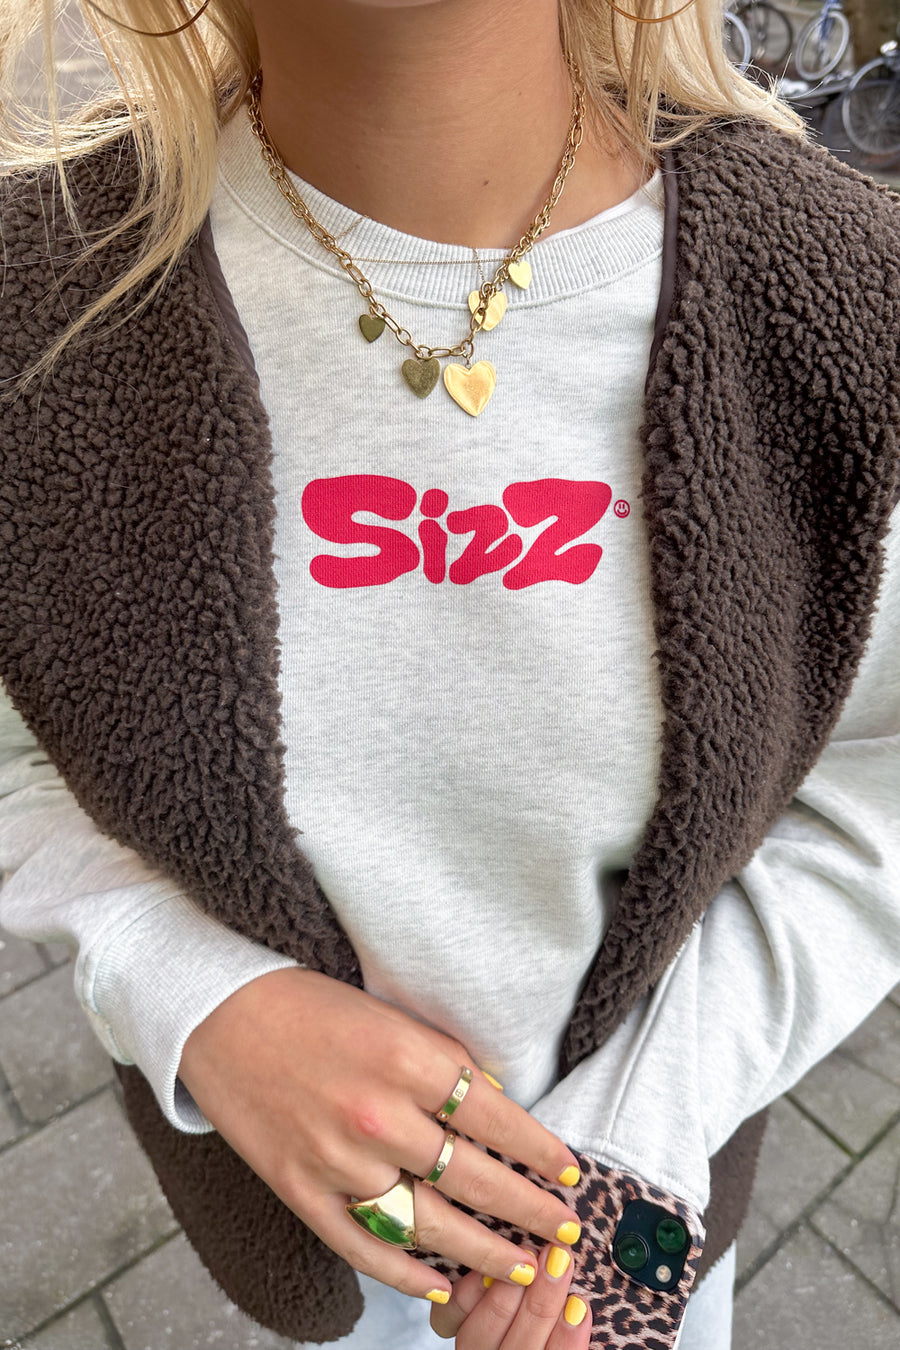 SIZZ Sweater Grey